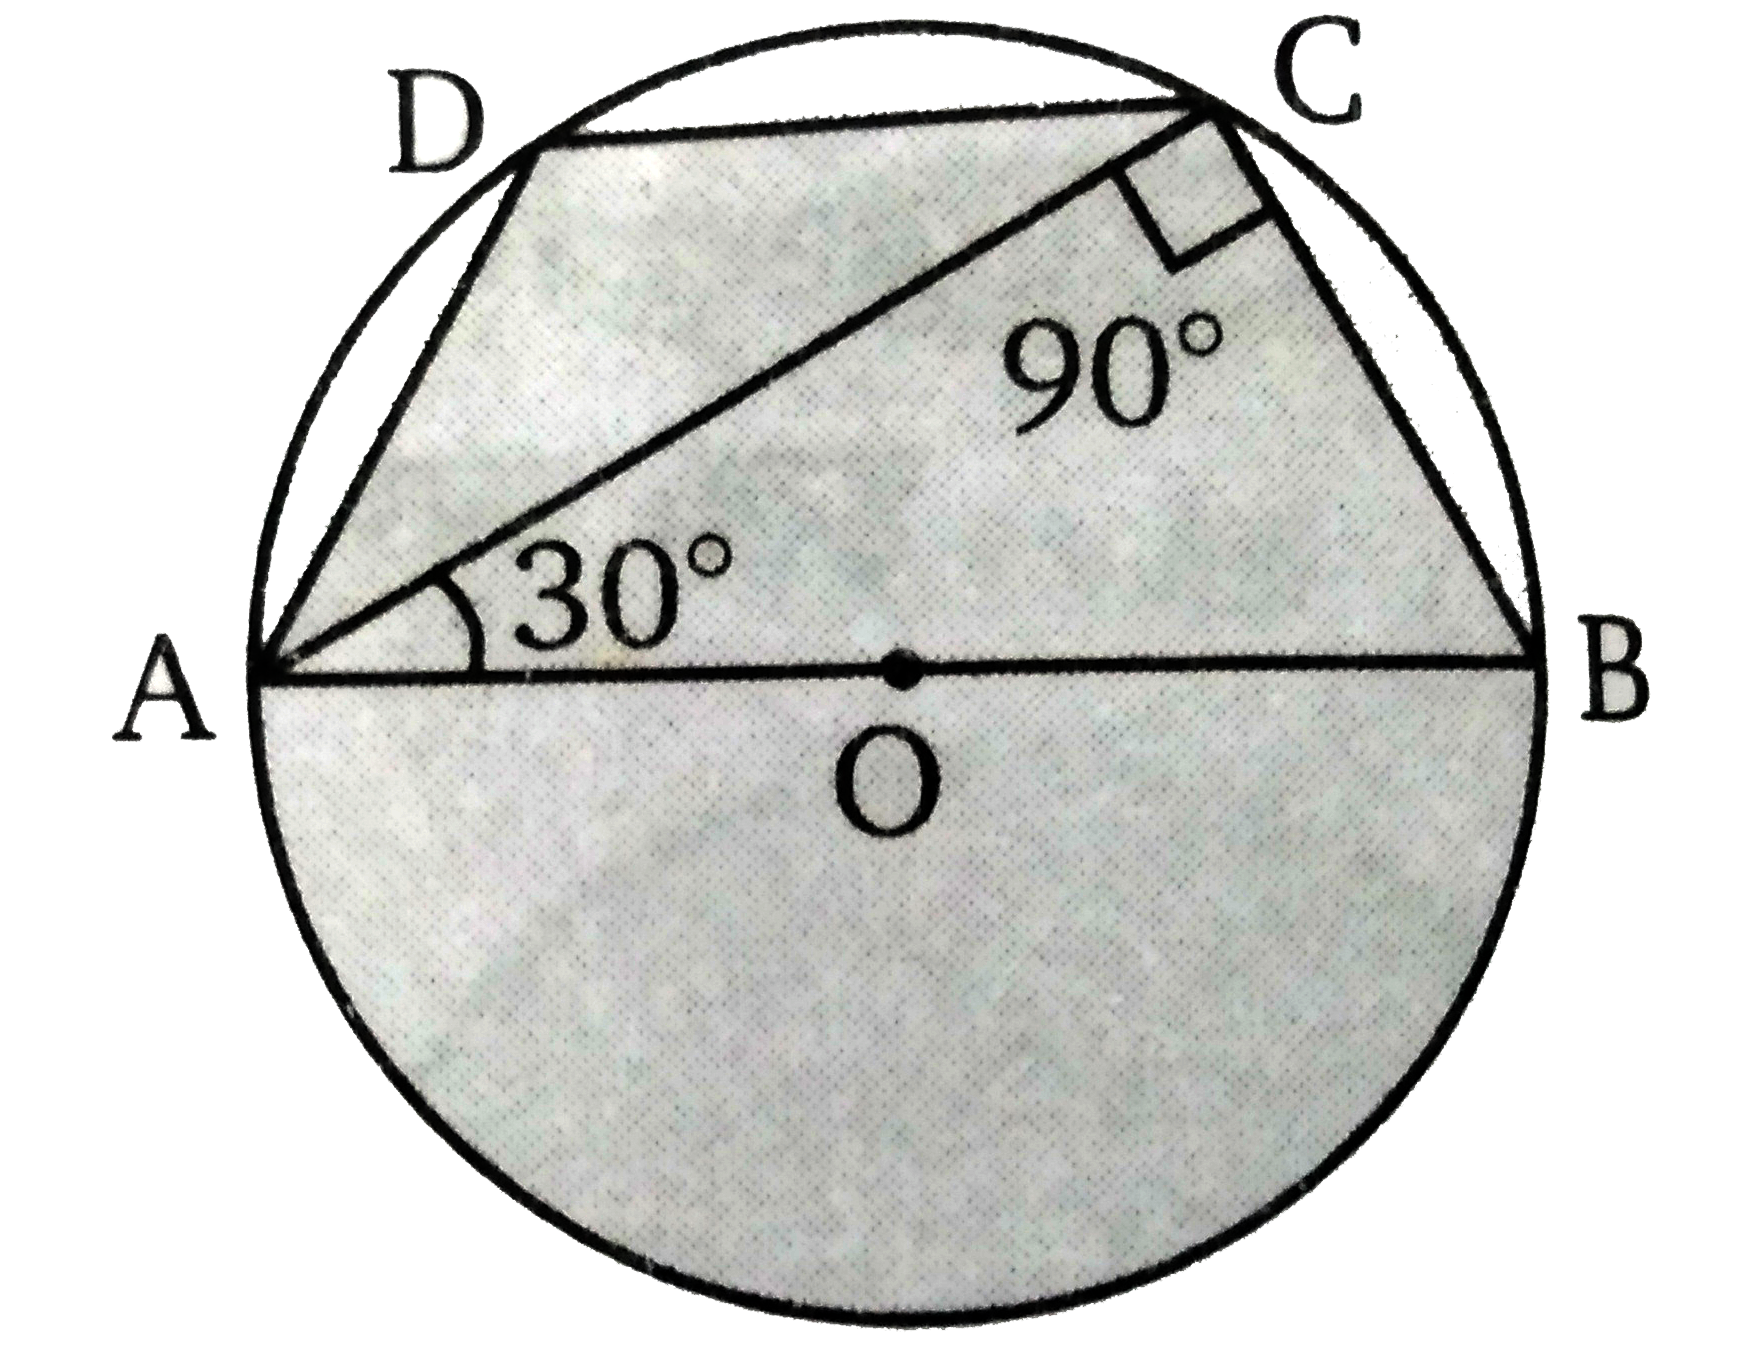 चित्र में O , वृत्त का केन्द्र है यदि  angle BAC = 30 ^(@) तब  angle ADC  का मान ज्ञात कीजिए।